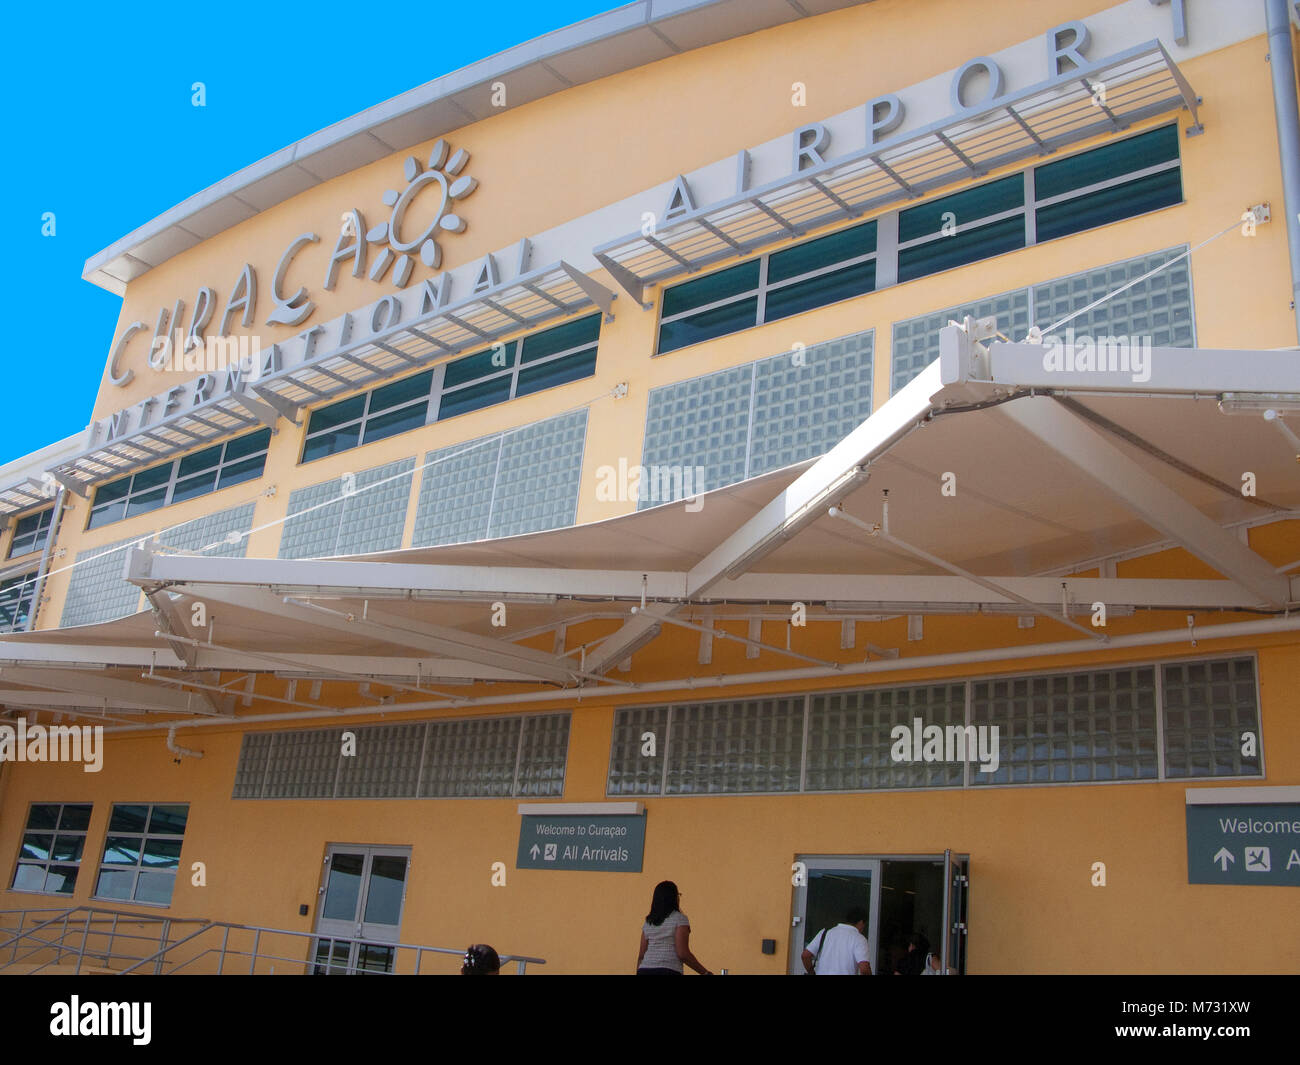 Terminal en el Aeropuerto Internacional Hato, Willemstad, Curazao, Antillas Neerlandesas, Caribe, Mar Caribe Foto de stock